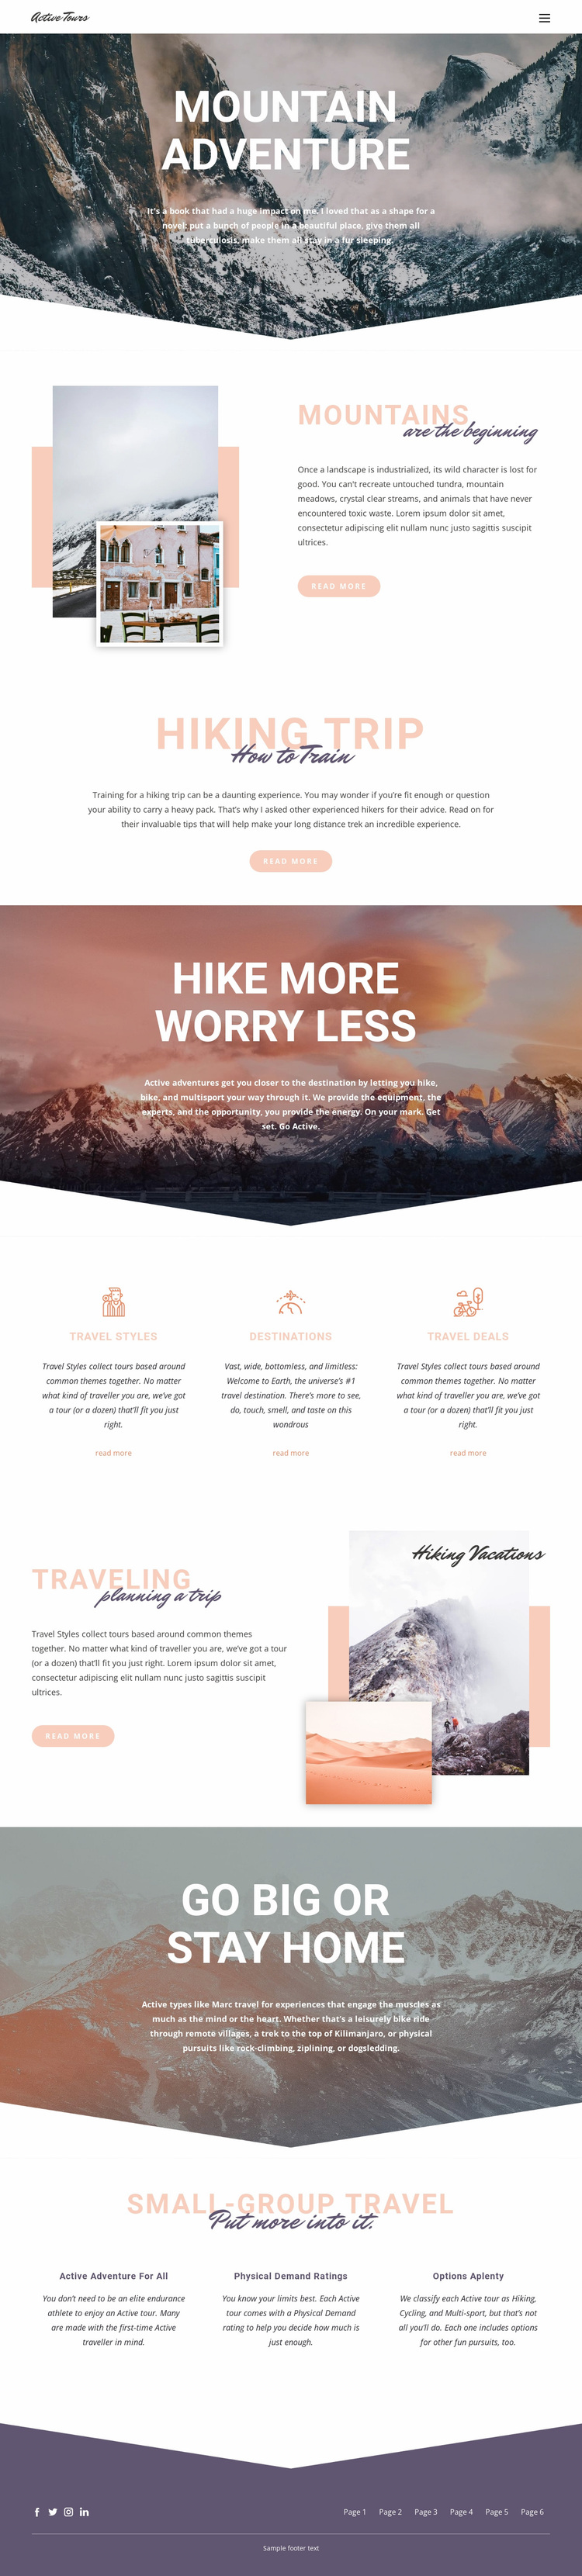 Mountain Adventure Website Design